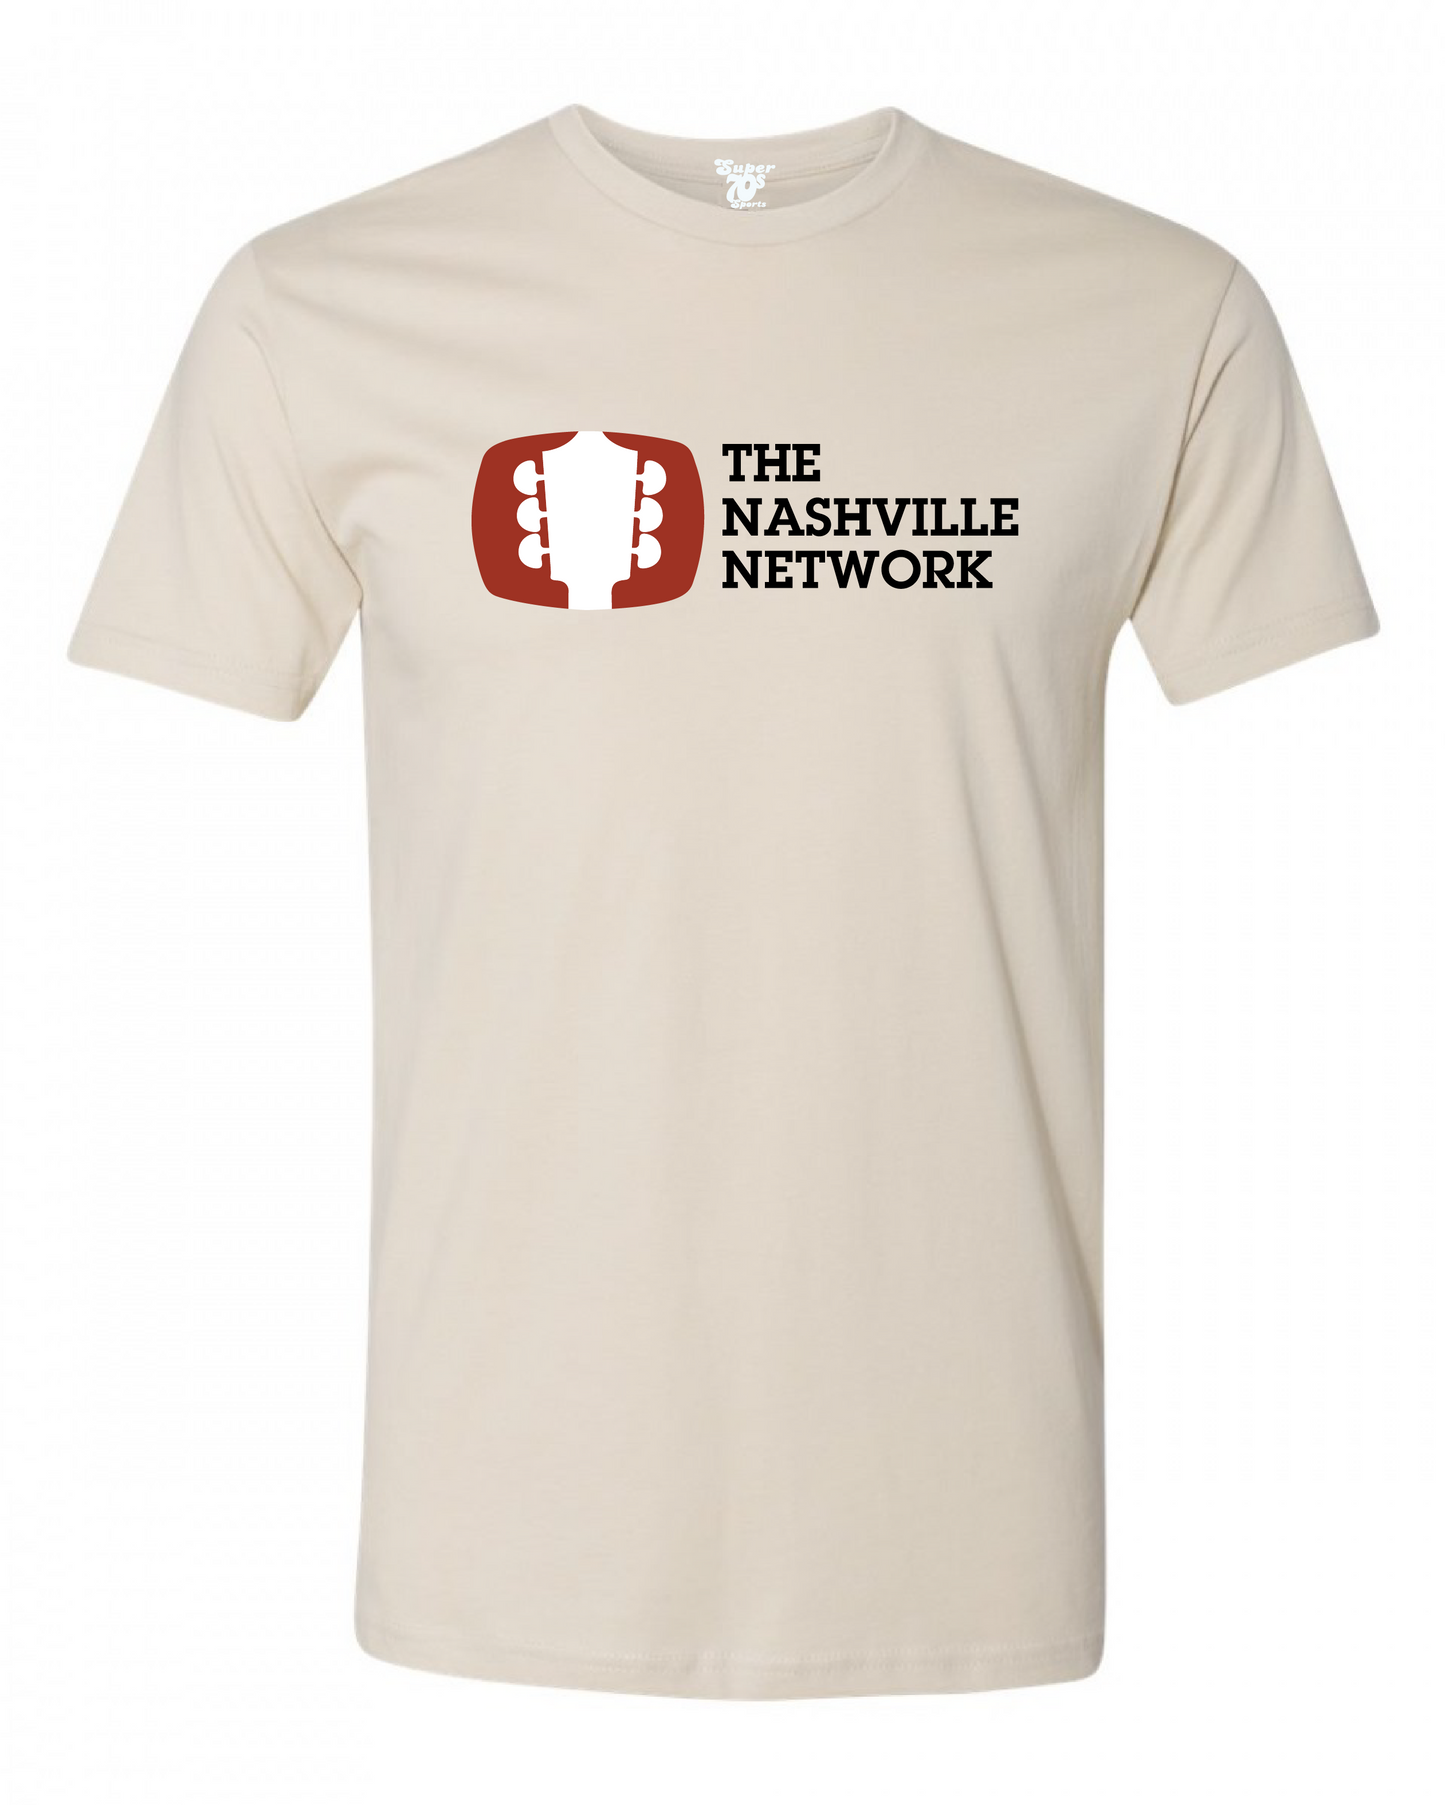 The Nashville Network Tee